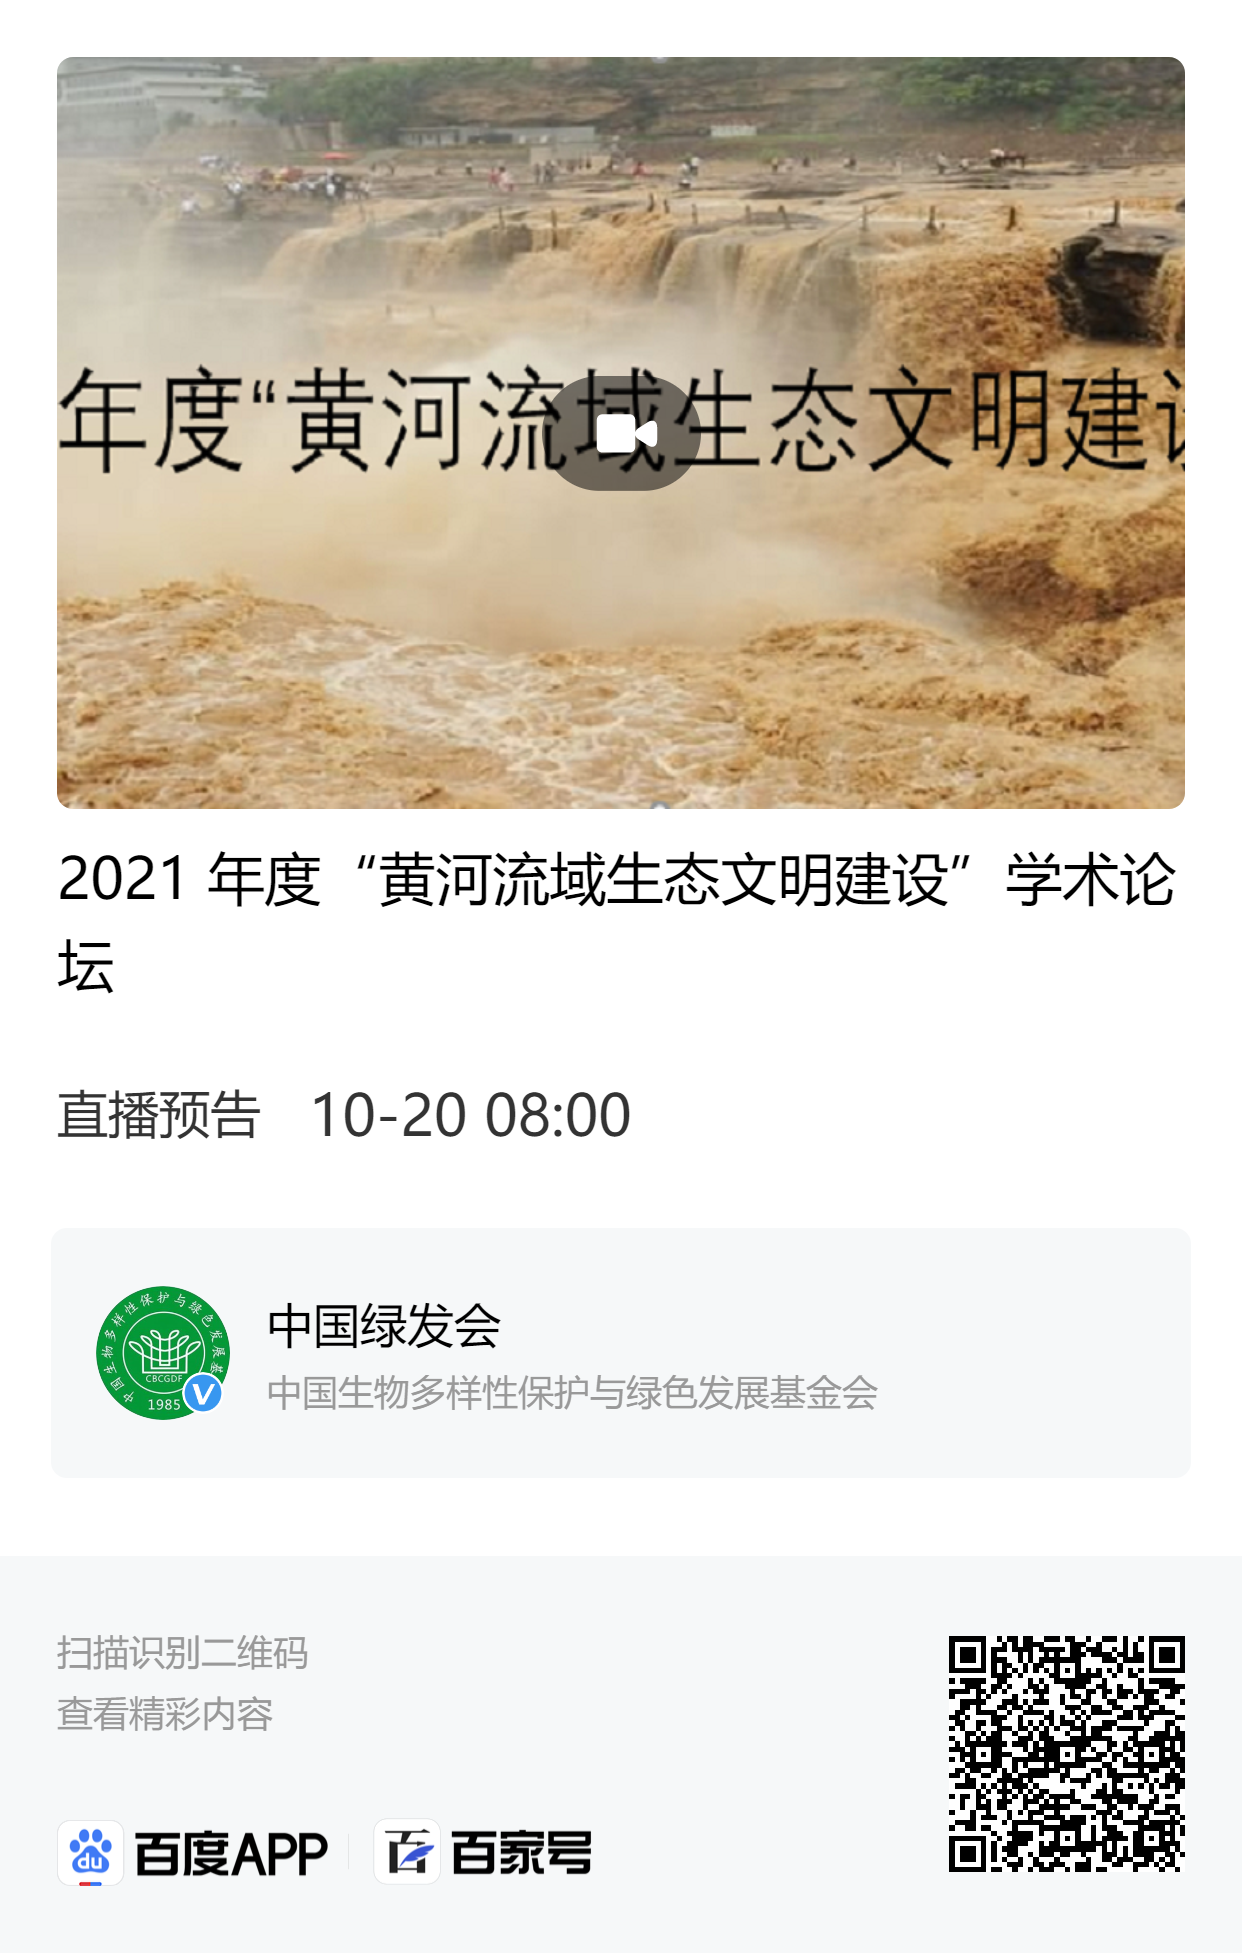 2021年度“黄河流域生态文明建设”学术论坛.png